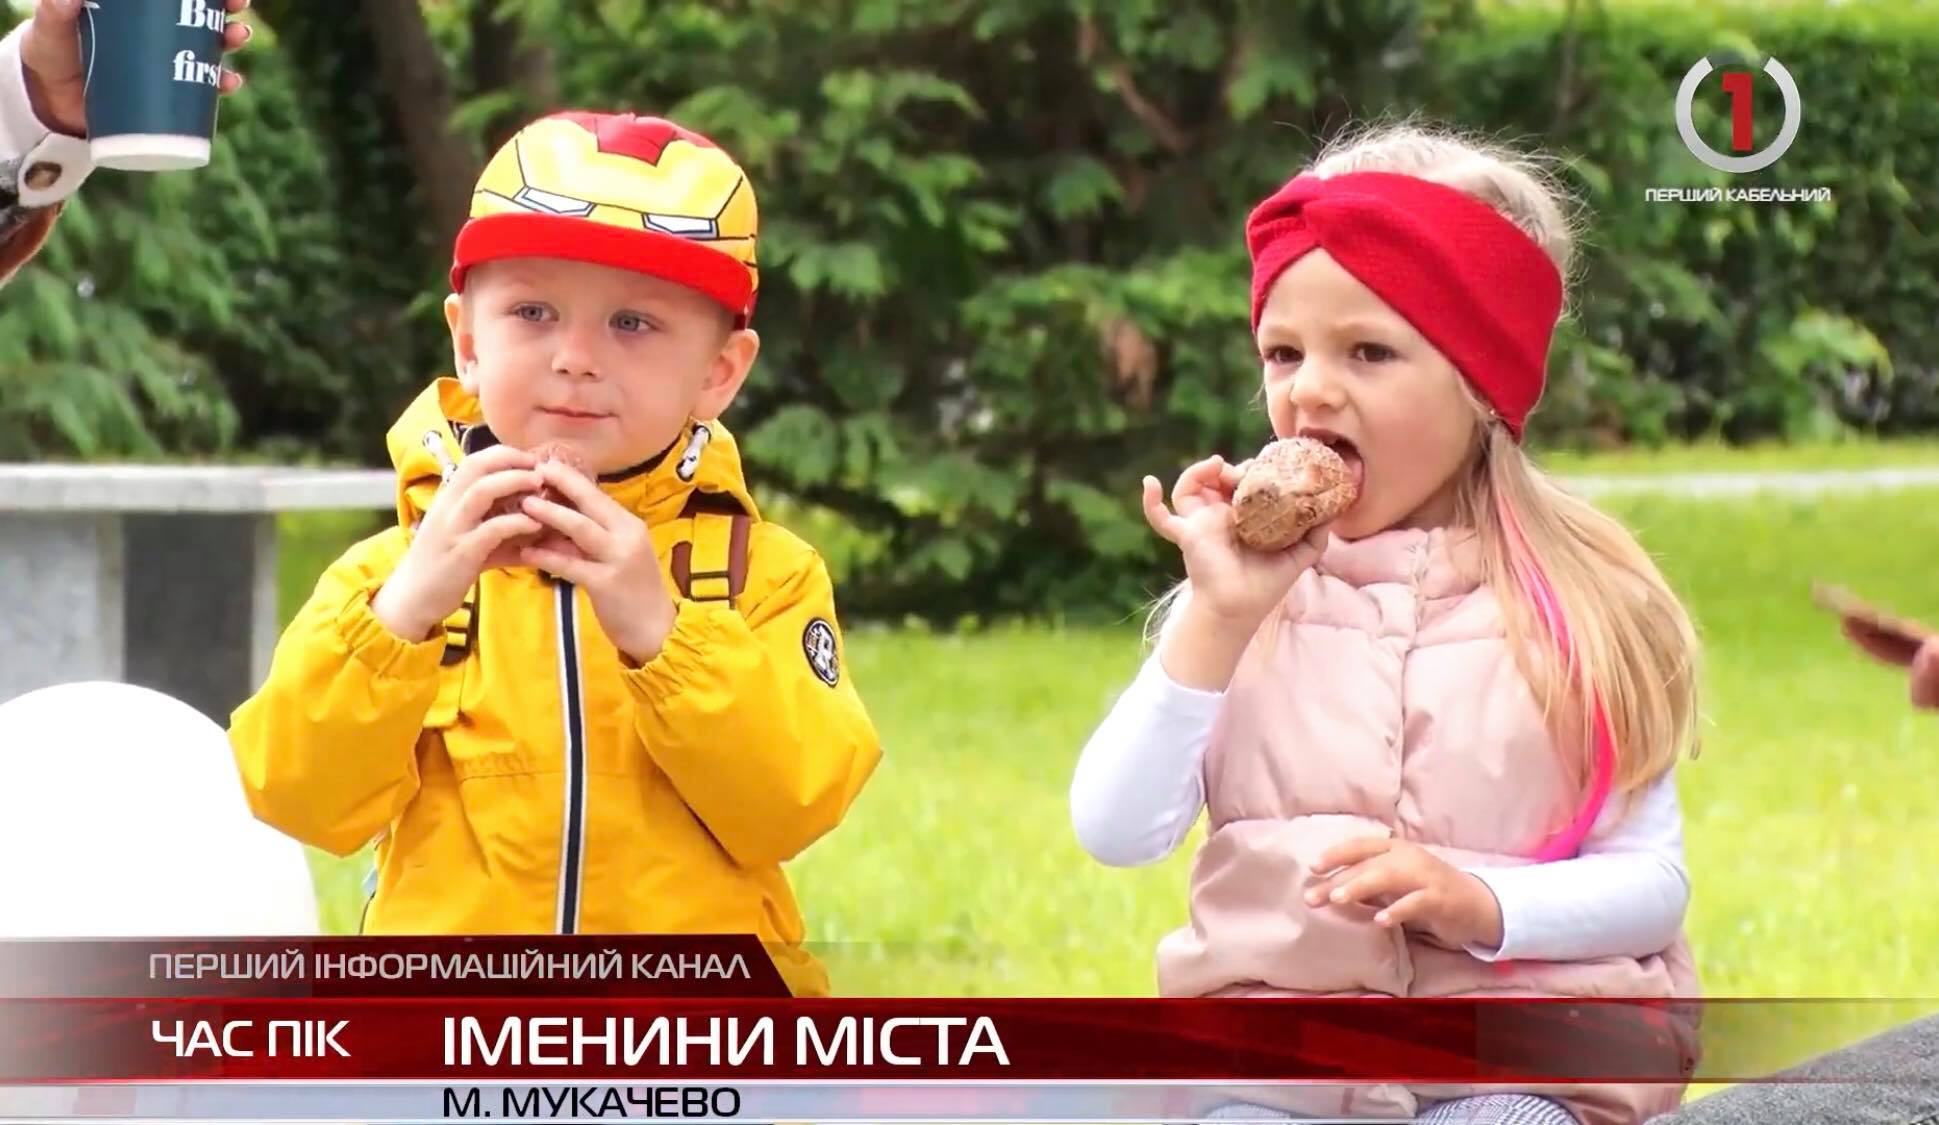 Місто-іменинник - Мукачево відзначило 1125 річницю урочистим відкриттям парку Кузьменка (ВІДЕО)